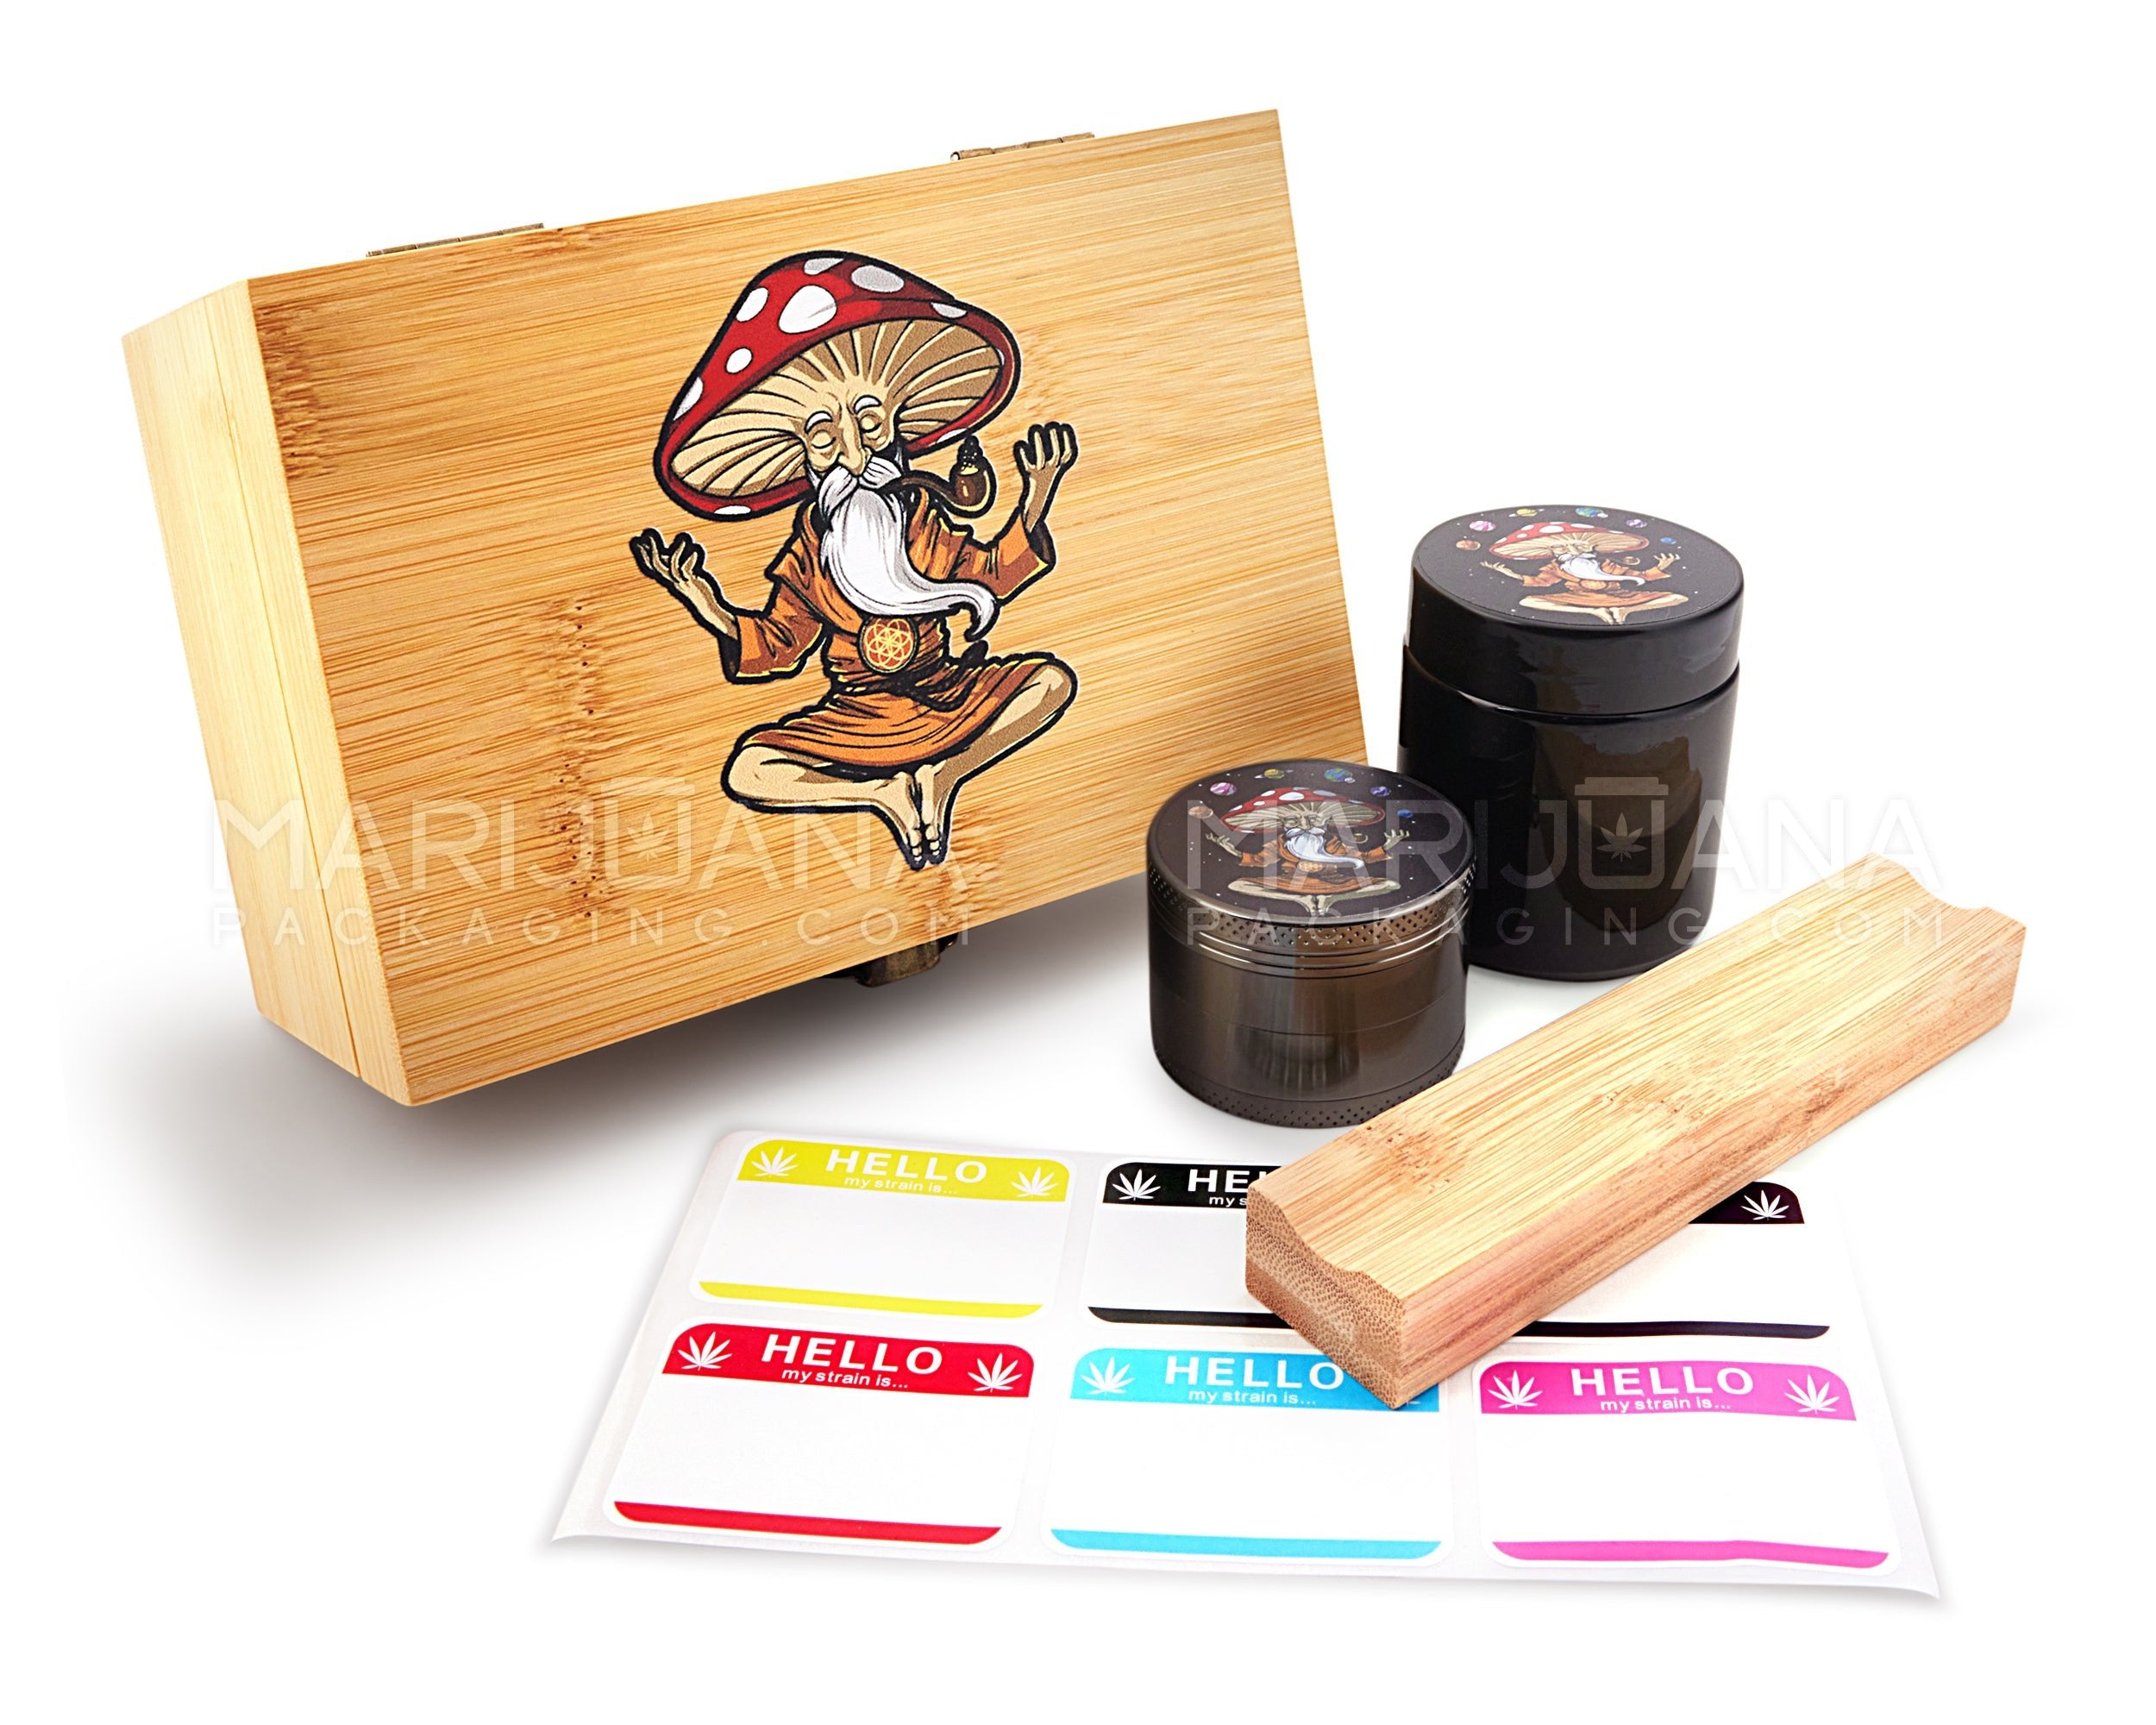 Mushroom Wizard Wooden Latch Lock Stash Box w/ Accessories | 152mm - Wood - 1